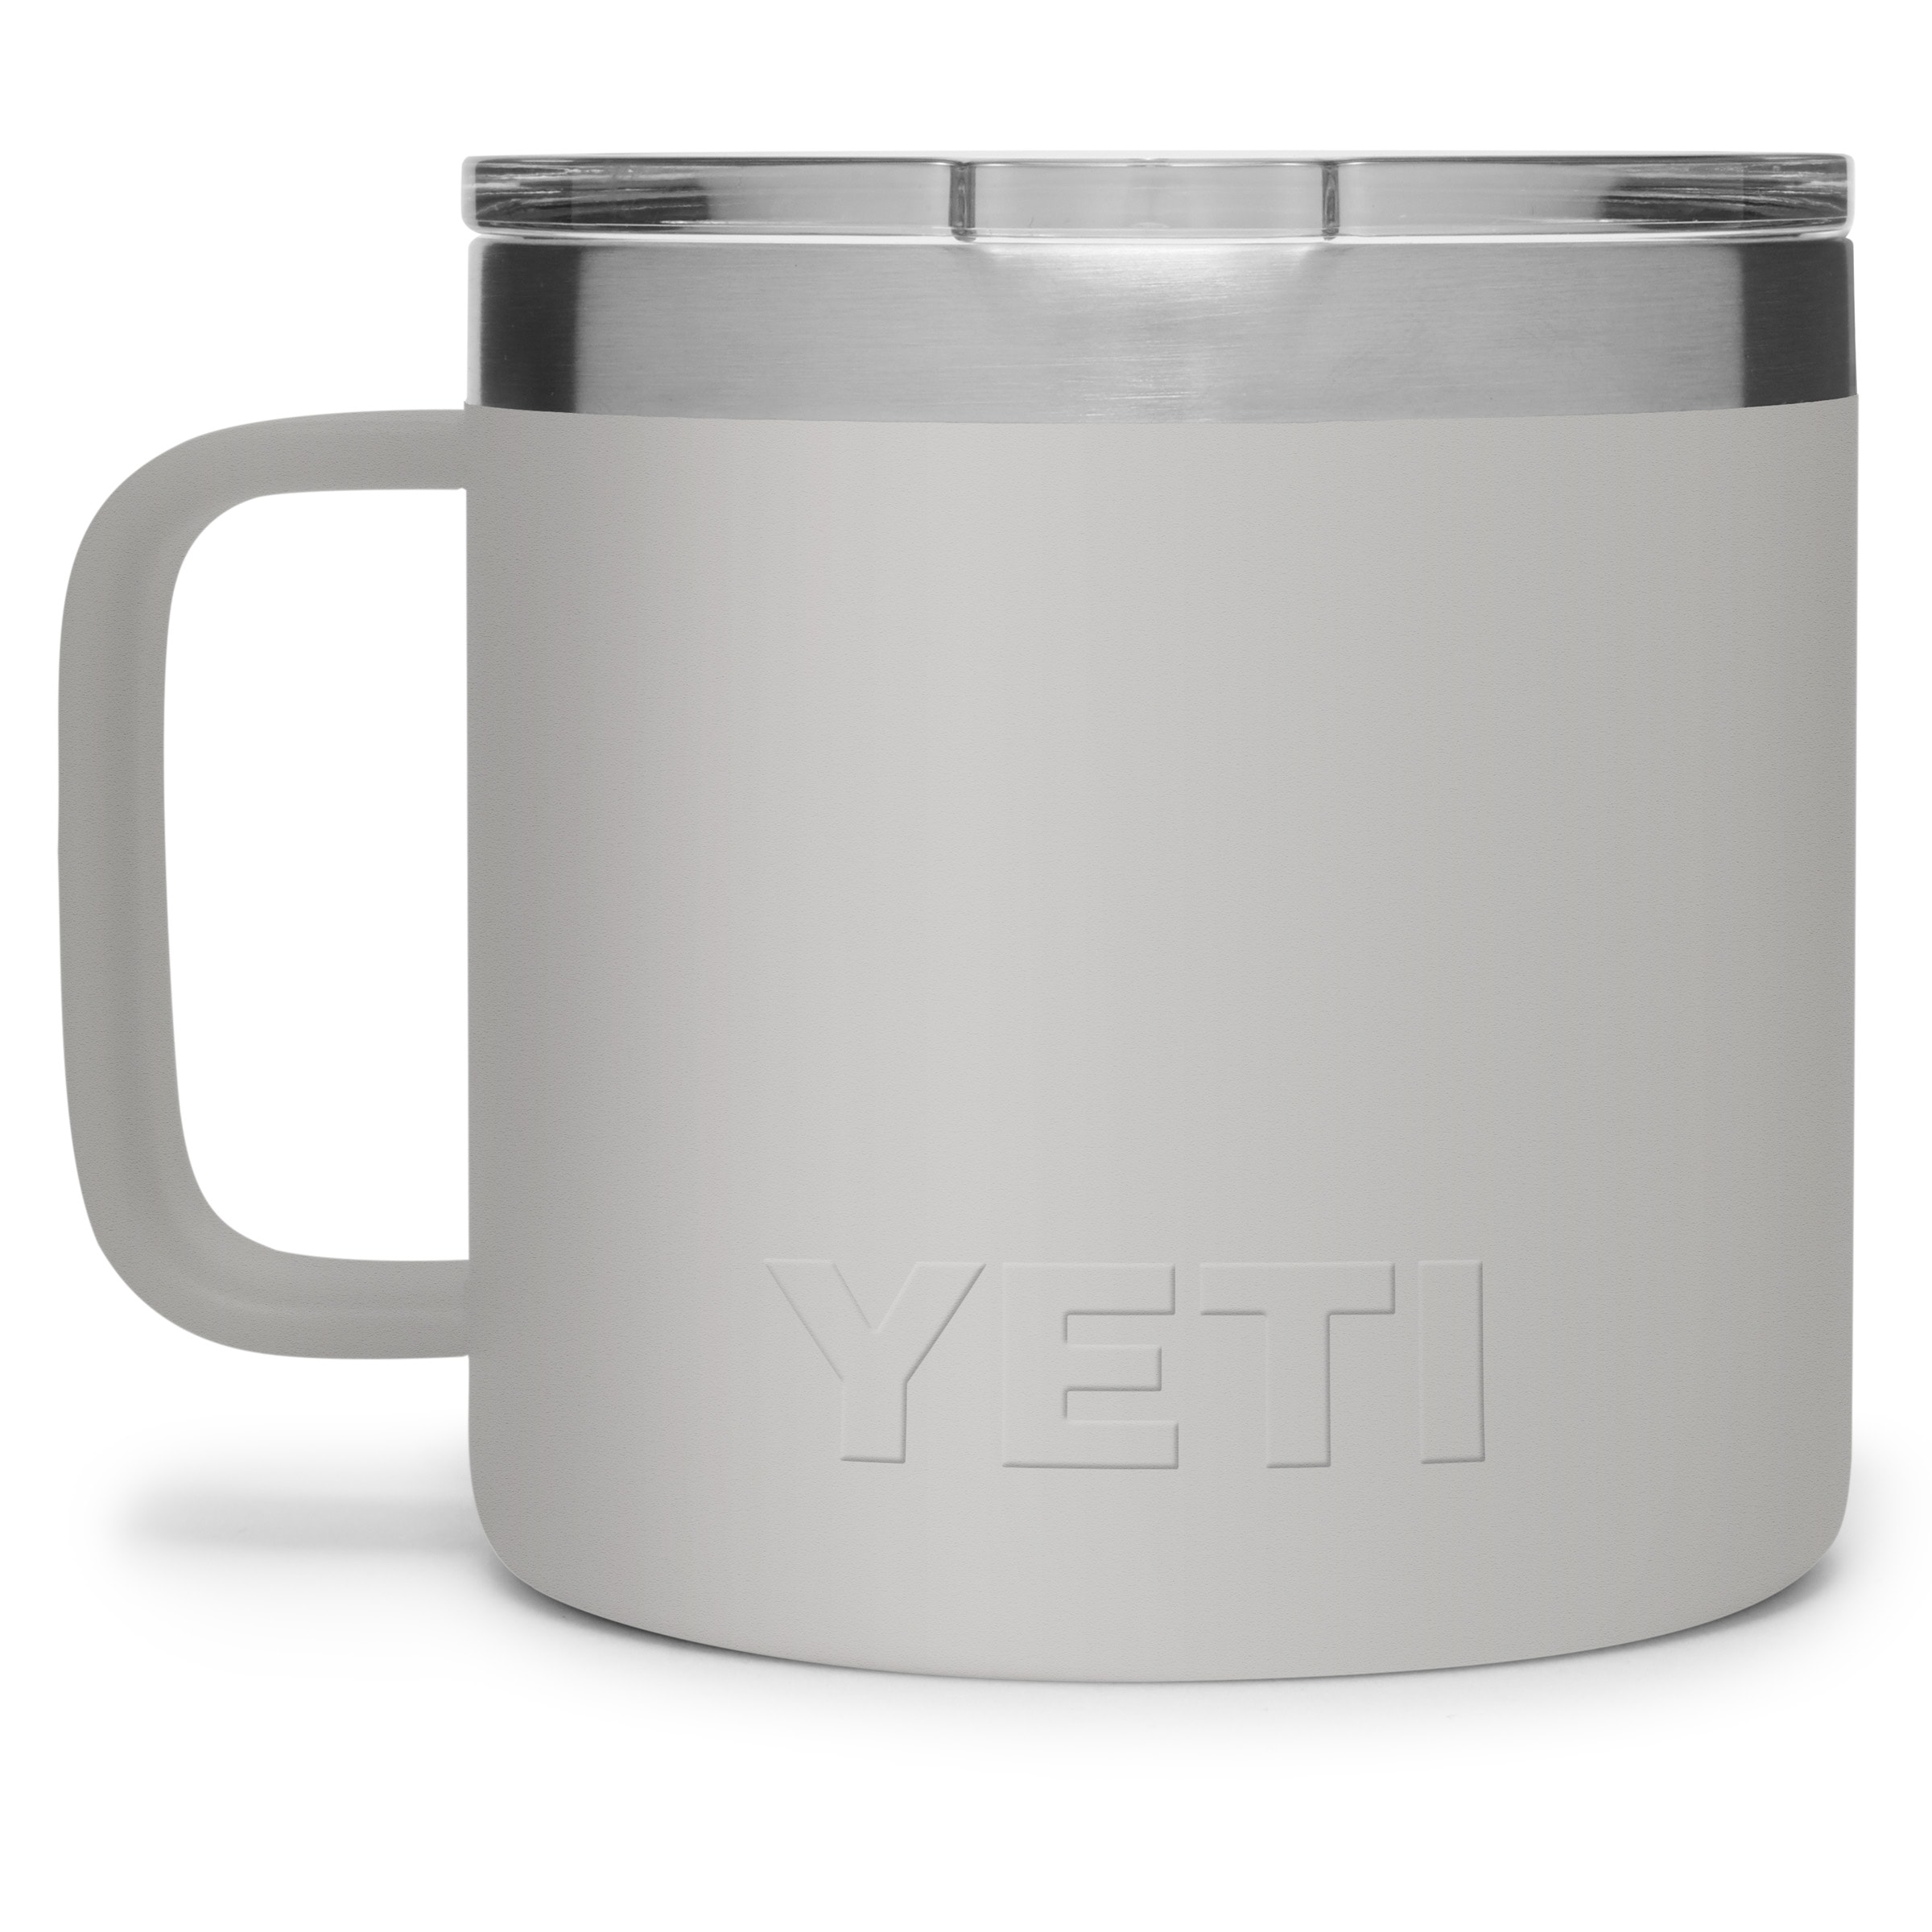 YETI® Mug - 24 oz S-23788 - Uline